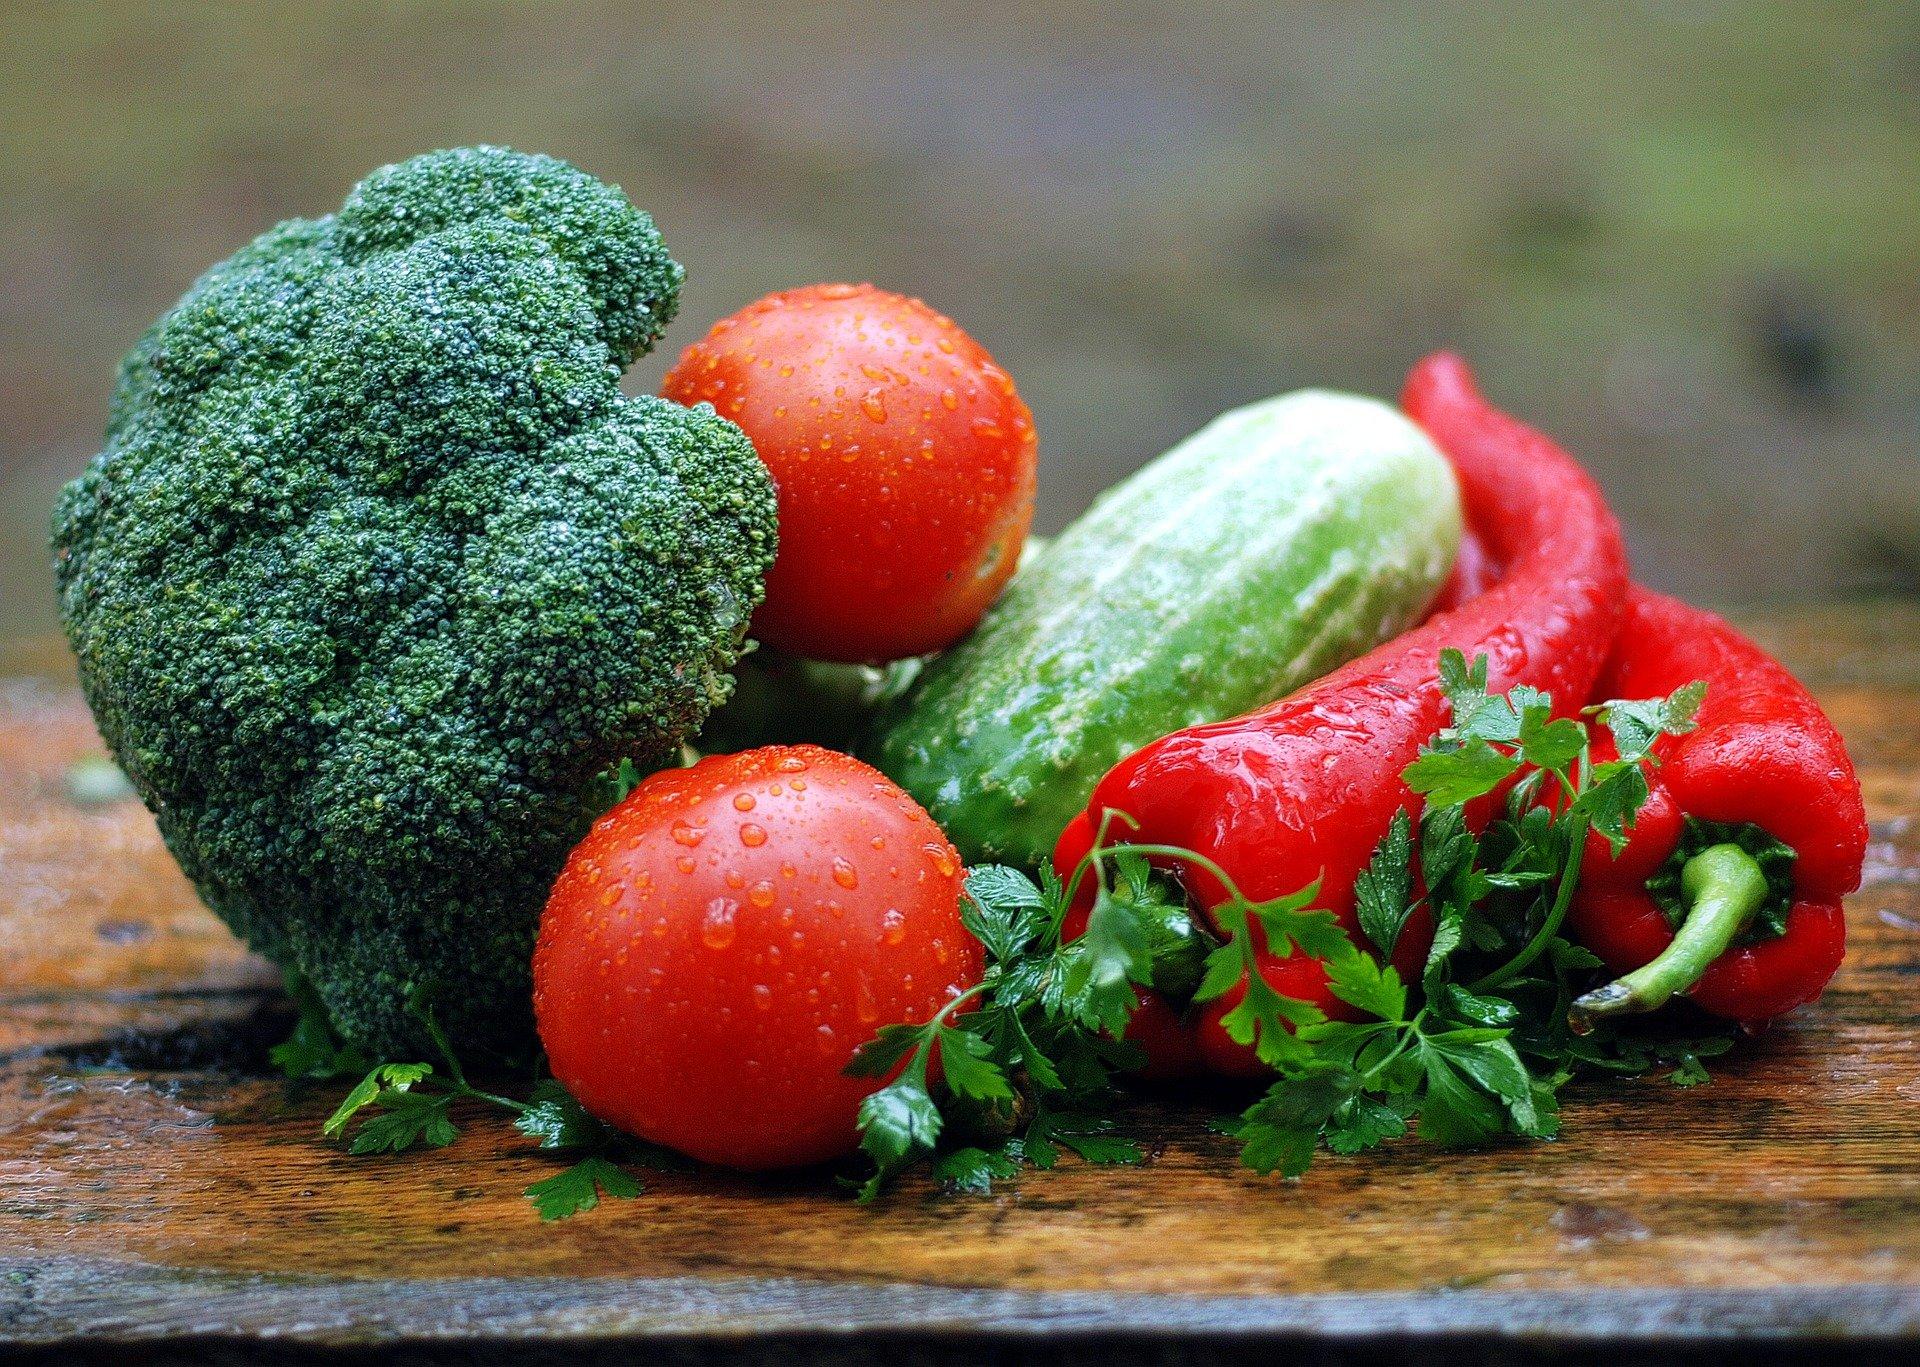 Washed vegetables, image by Jerzy Gorecki, pixabay.com